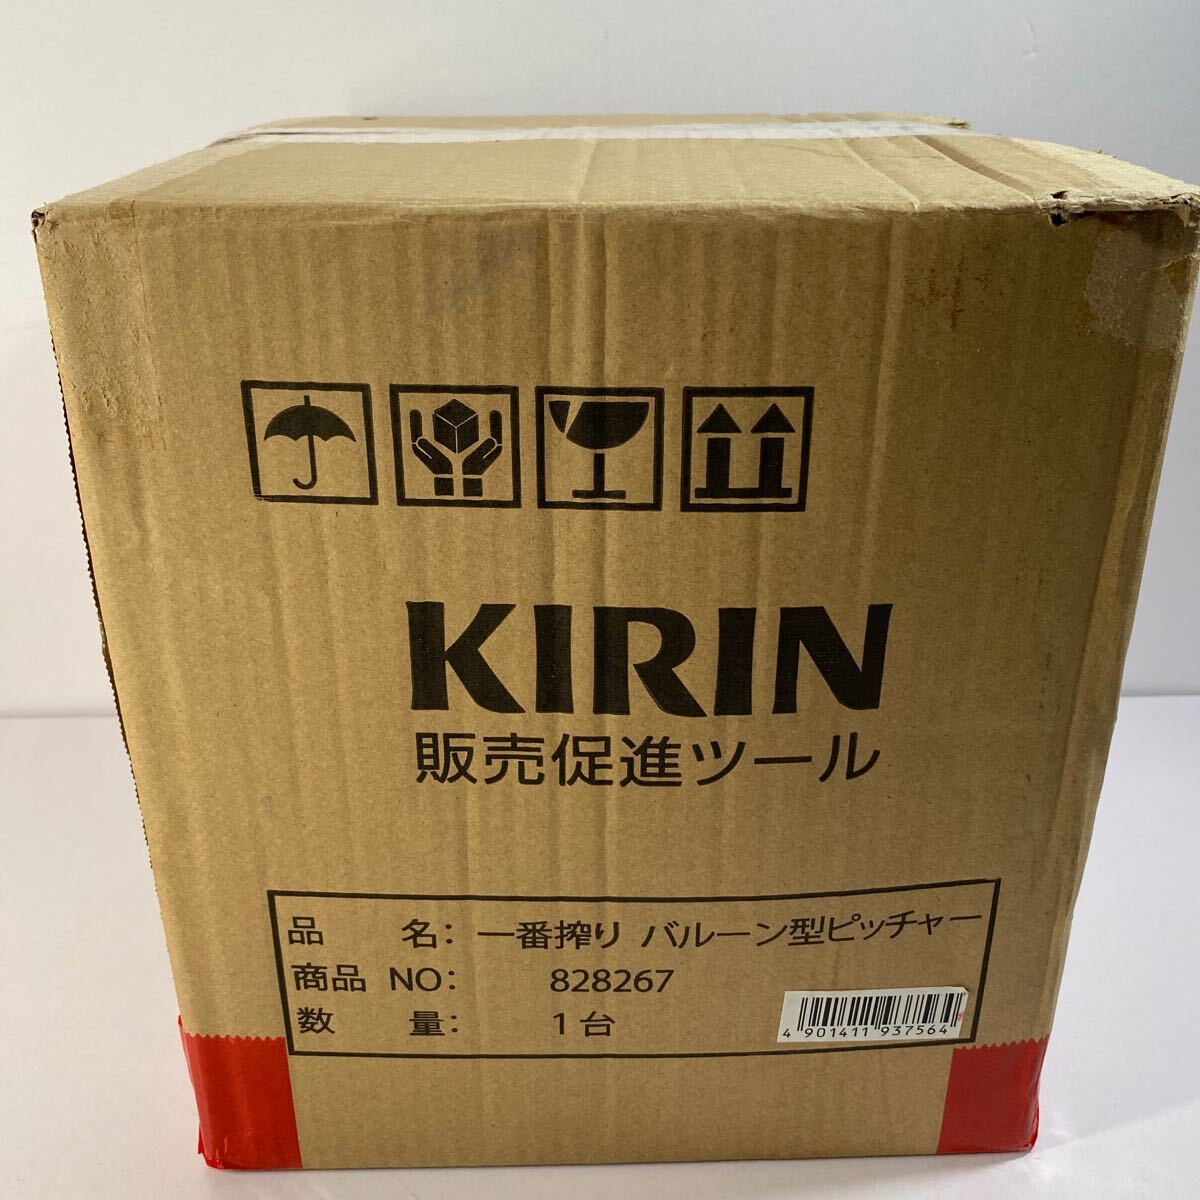 開封未使用品 キリン 一番搾り バルーン型ピッチャー 4L 非売品 レア KIRINの画像1